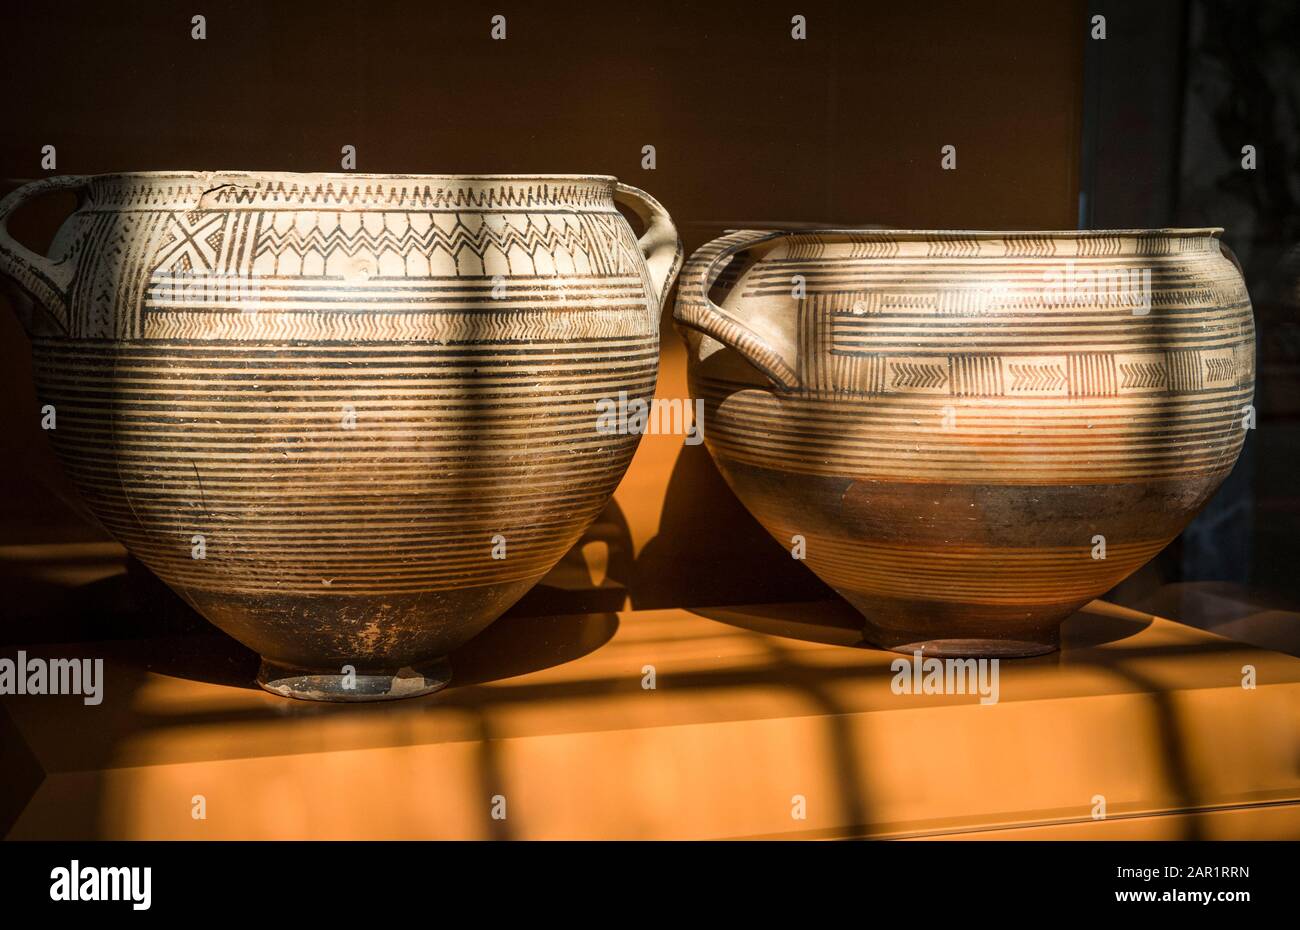 Eine Museumsausstellung von frühgriechischen Keramik, Geometrischen Kratern, Graburnen, von 750-720v. chr. aus Gräbern im Antiken Korinth, Peloponnes, Griechenland. Stockfoto